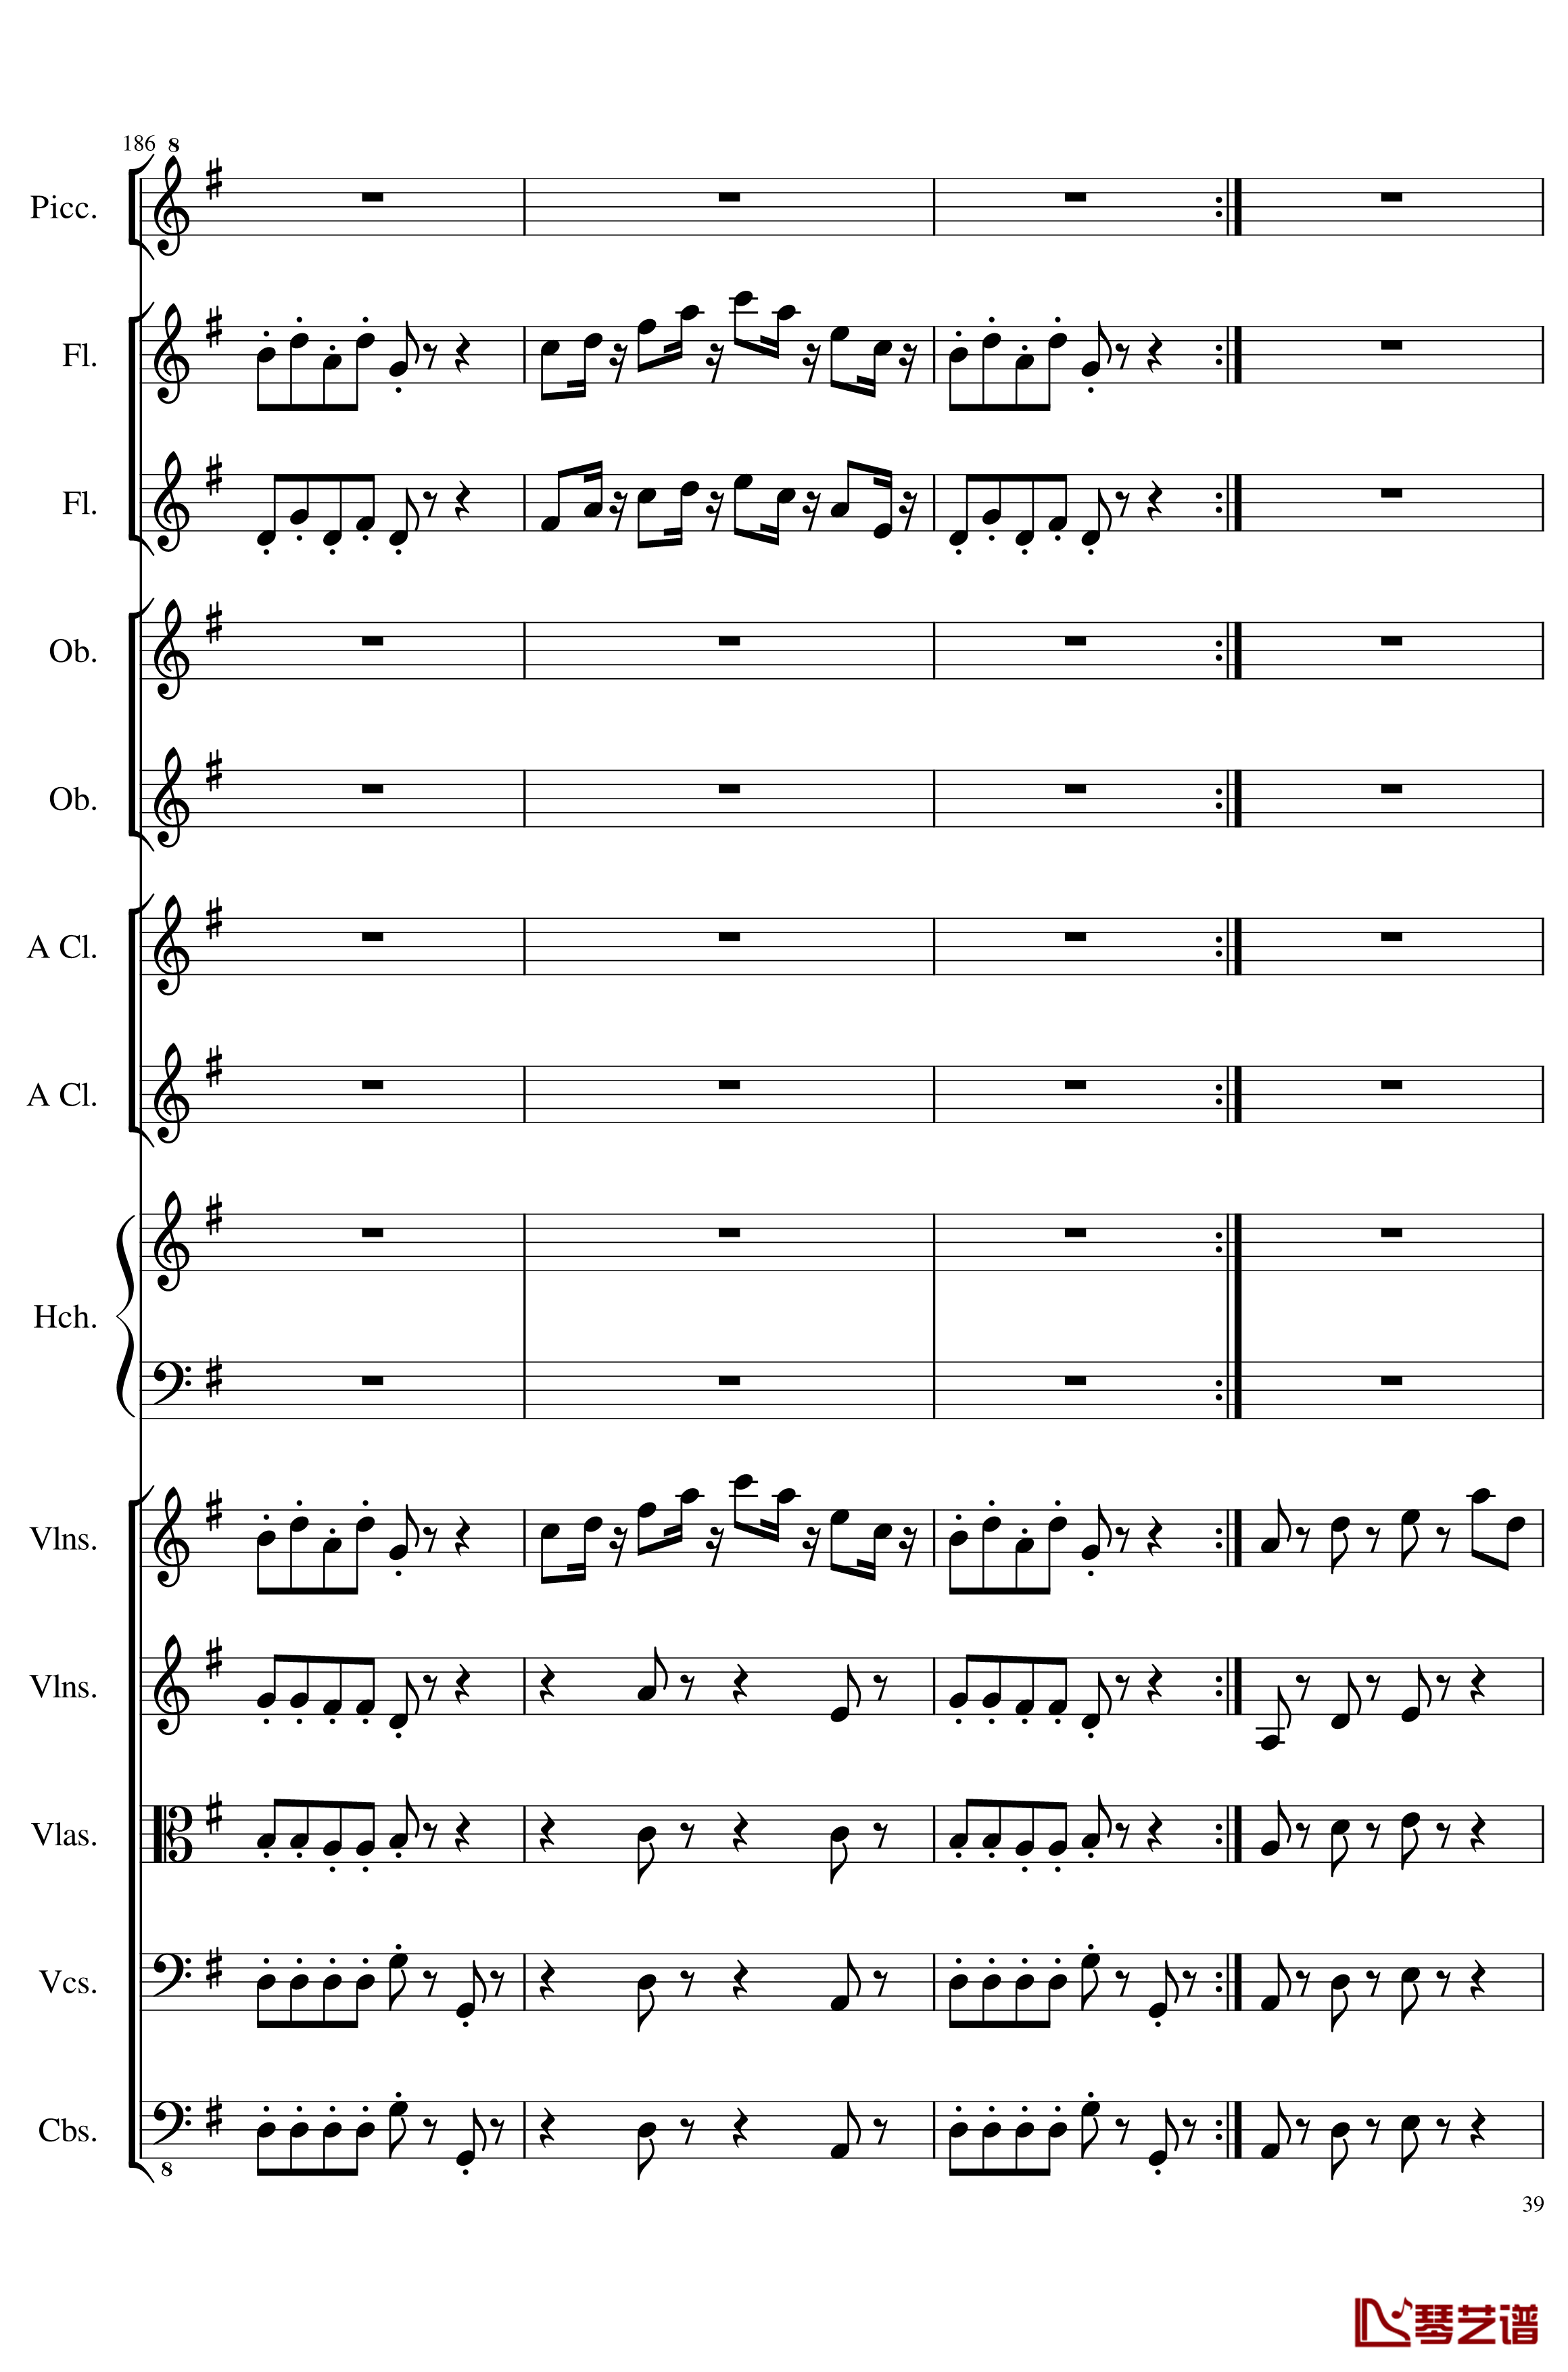 7 Contredanses No.1-7, Op.124钢琴谱-7首乡村舞曲，第一至第七，作品124-一个球39